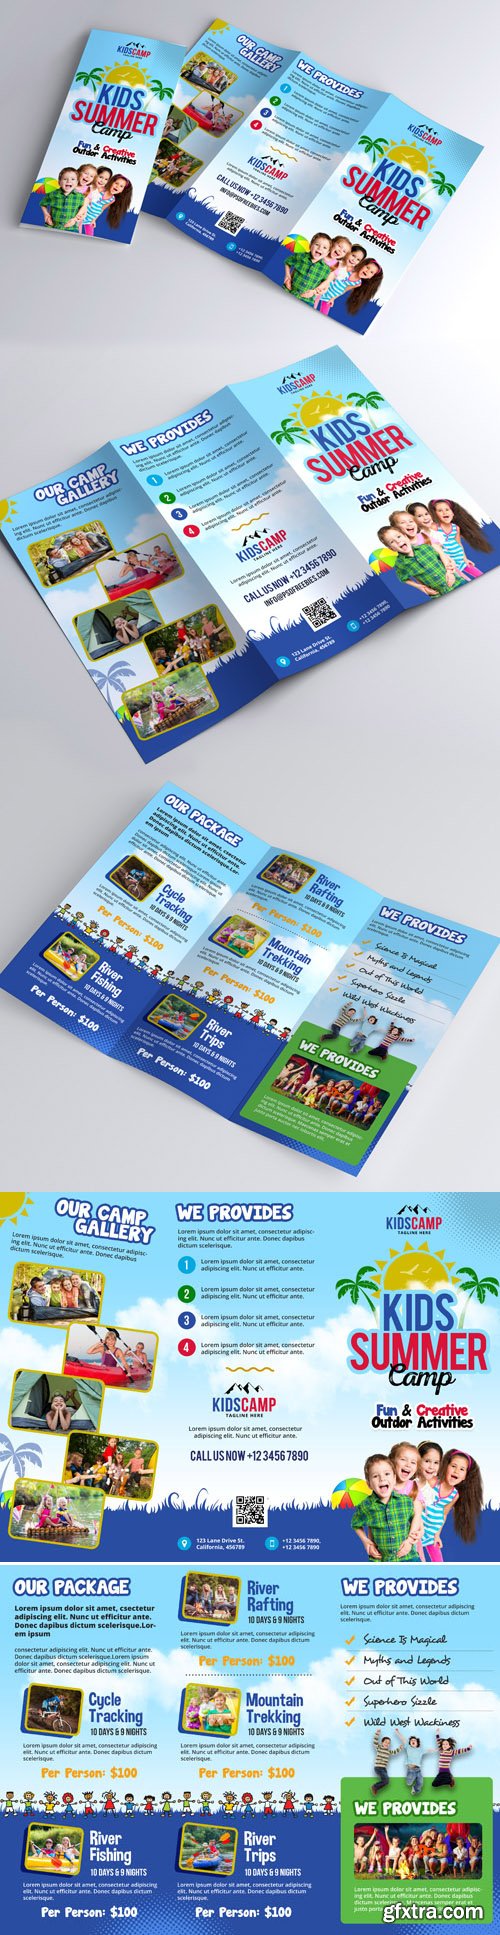 Kids Camp - Summer Trifold Brochure Design PSD Template